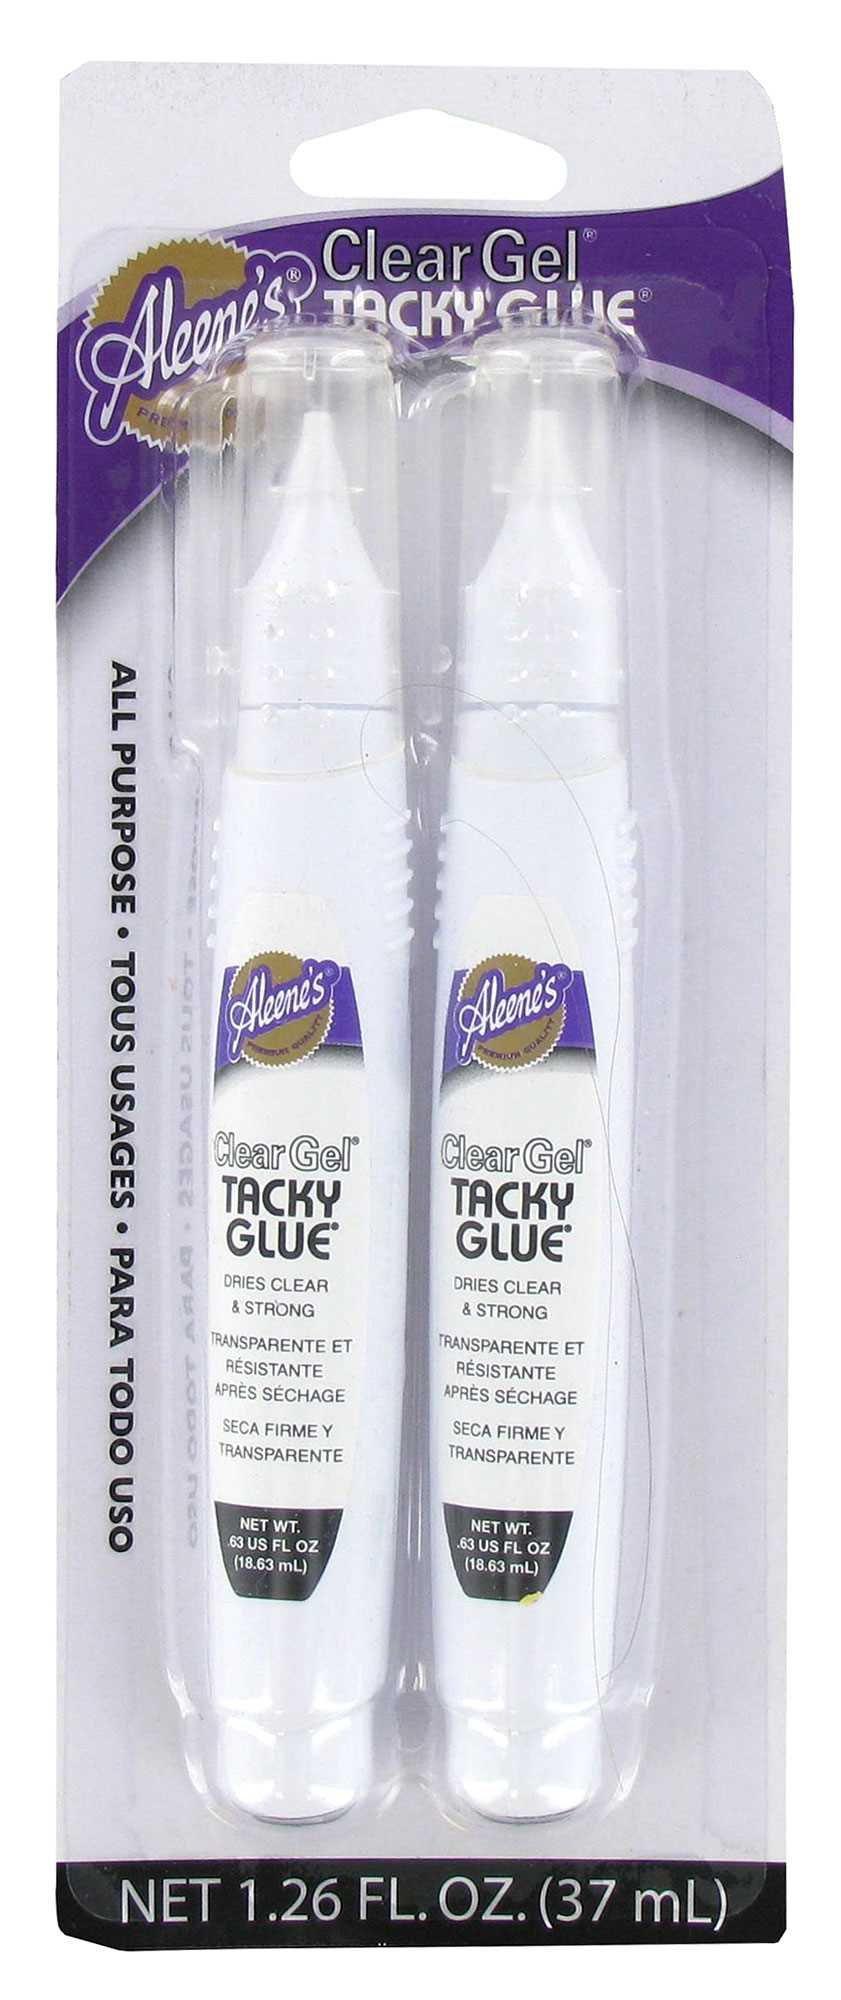 Aleene's Always Ready Quick Dry Tacky Glue 4 fl. oz.